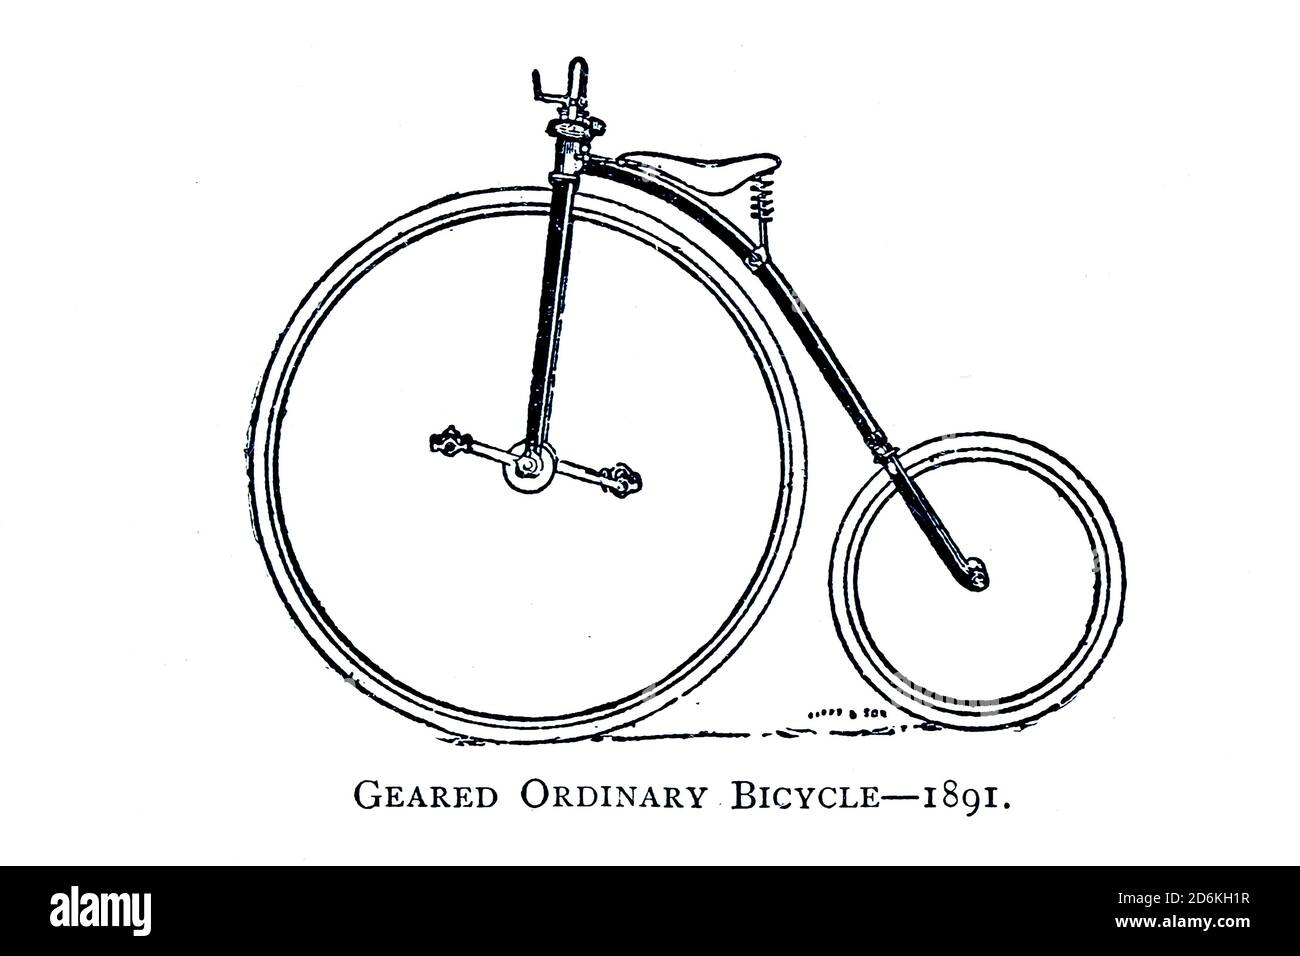 Moto haute roue ordinaire 1891 de Wheel et Wheeling, un manuel indispensable pour les cyclistes, avec plus de deux cents illustrations de porter, Luther Henry. Publié à Boston en 1892 Banque D'Images